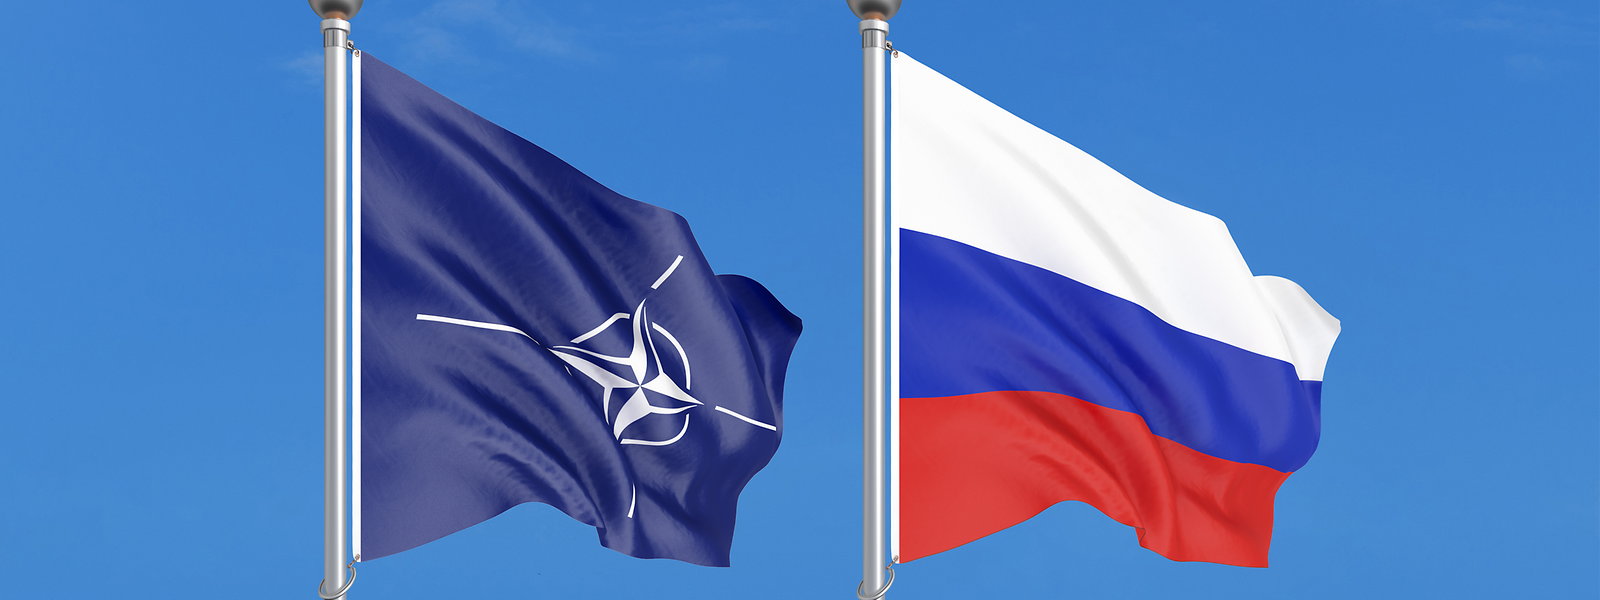 Nach der Auflösung der Sowjetunion und des Warschauer Pakts hat sich die NATO immer weiter nach Osten ausgedehnt. Aus russischer Sicht ein klarer „Wortbruch“ des Westens. Aus Sicht der Staaten Osteuropas ein legitimes Sicherheitsbedürfnis.